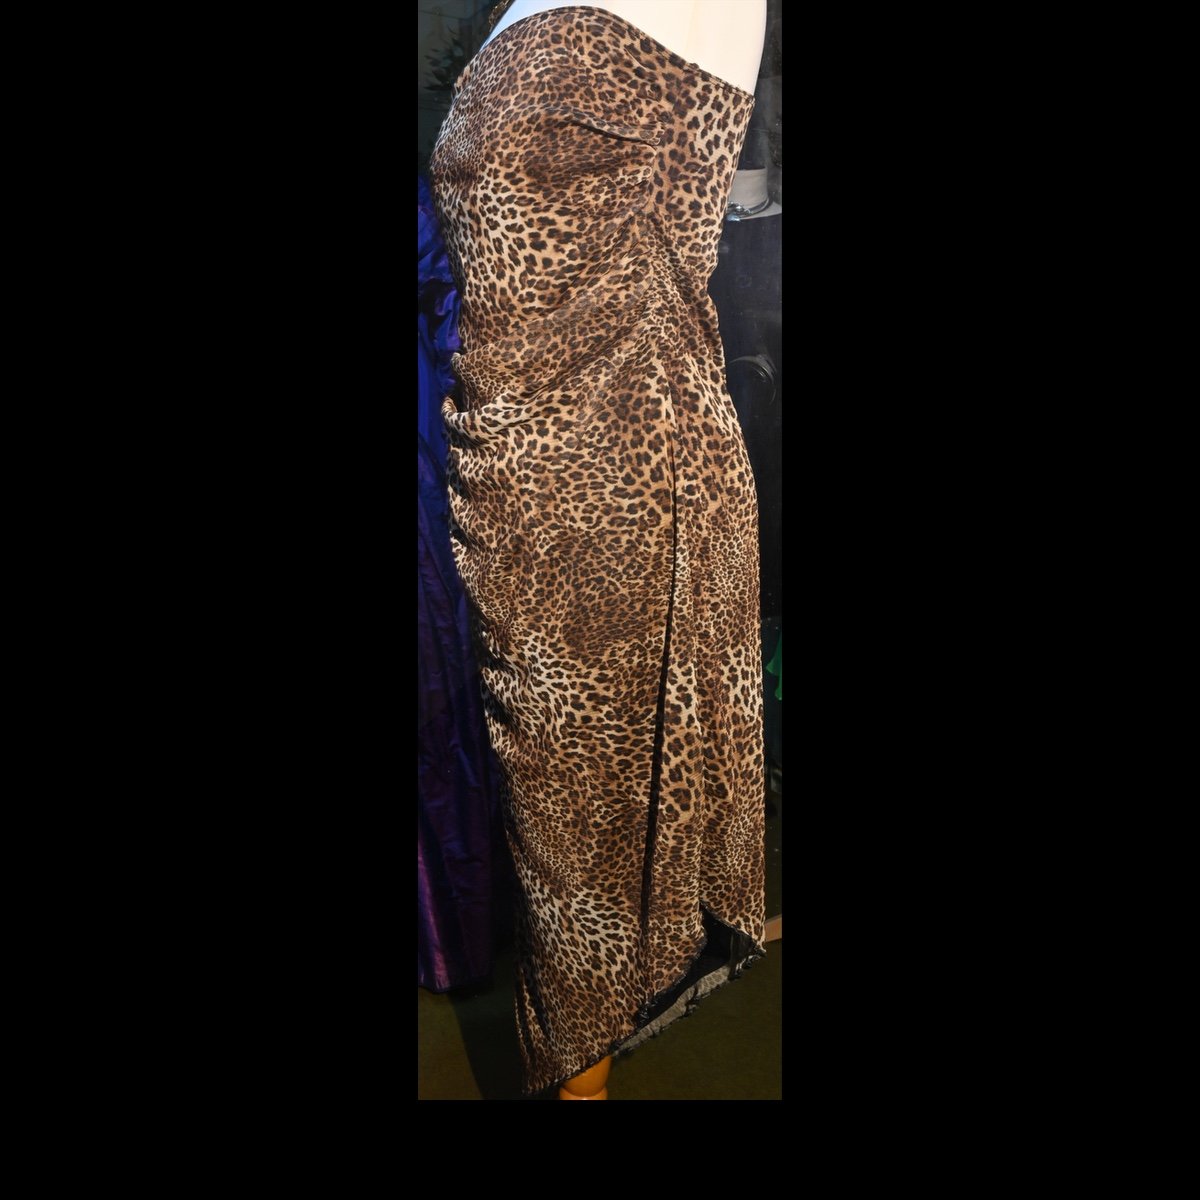 c.1990 Leopard skin print evening dress